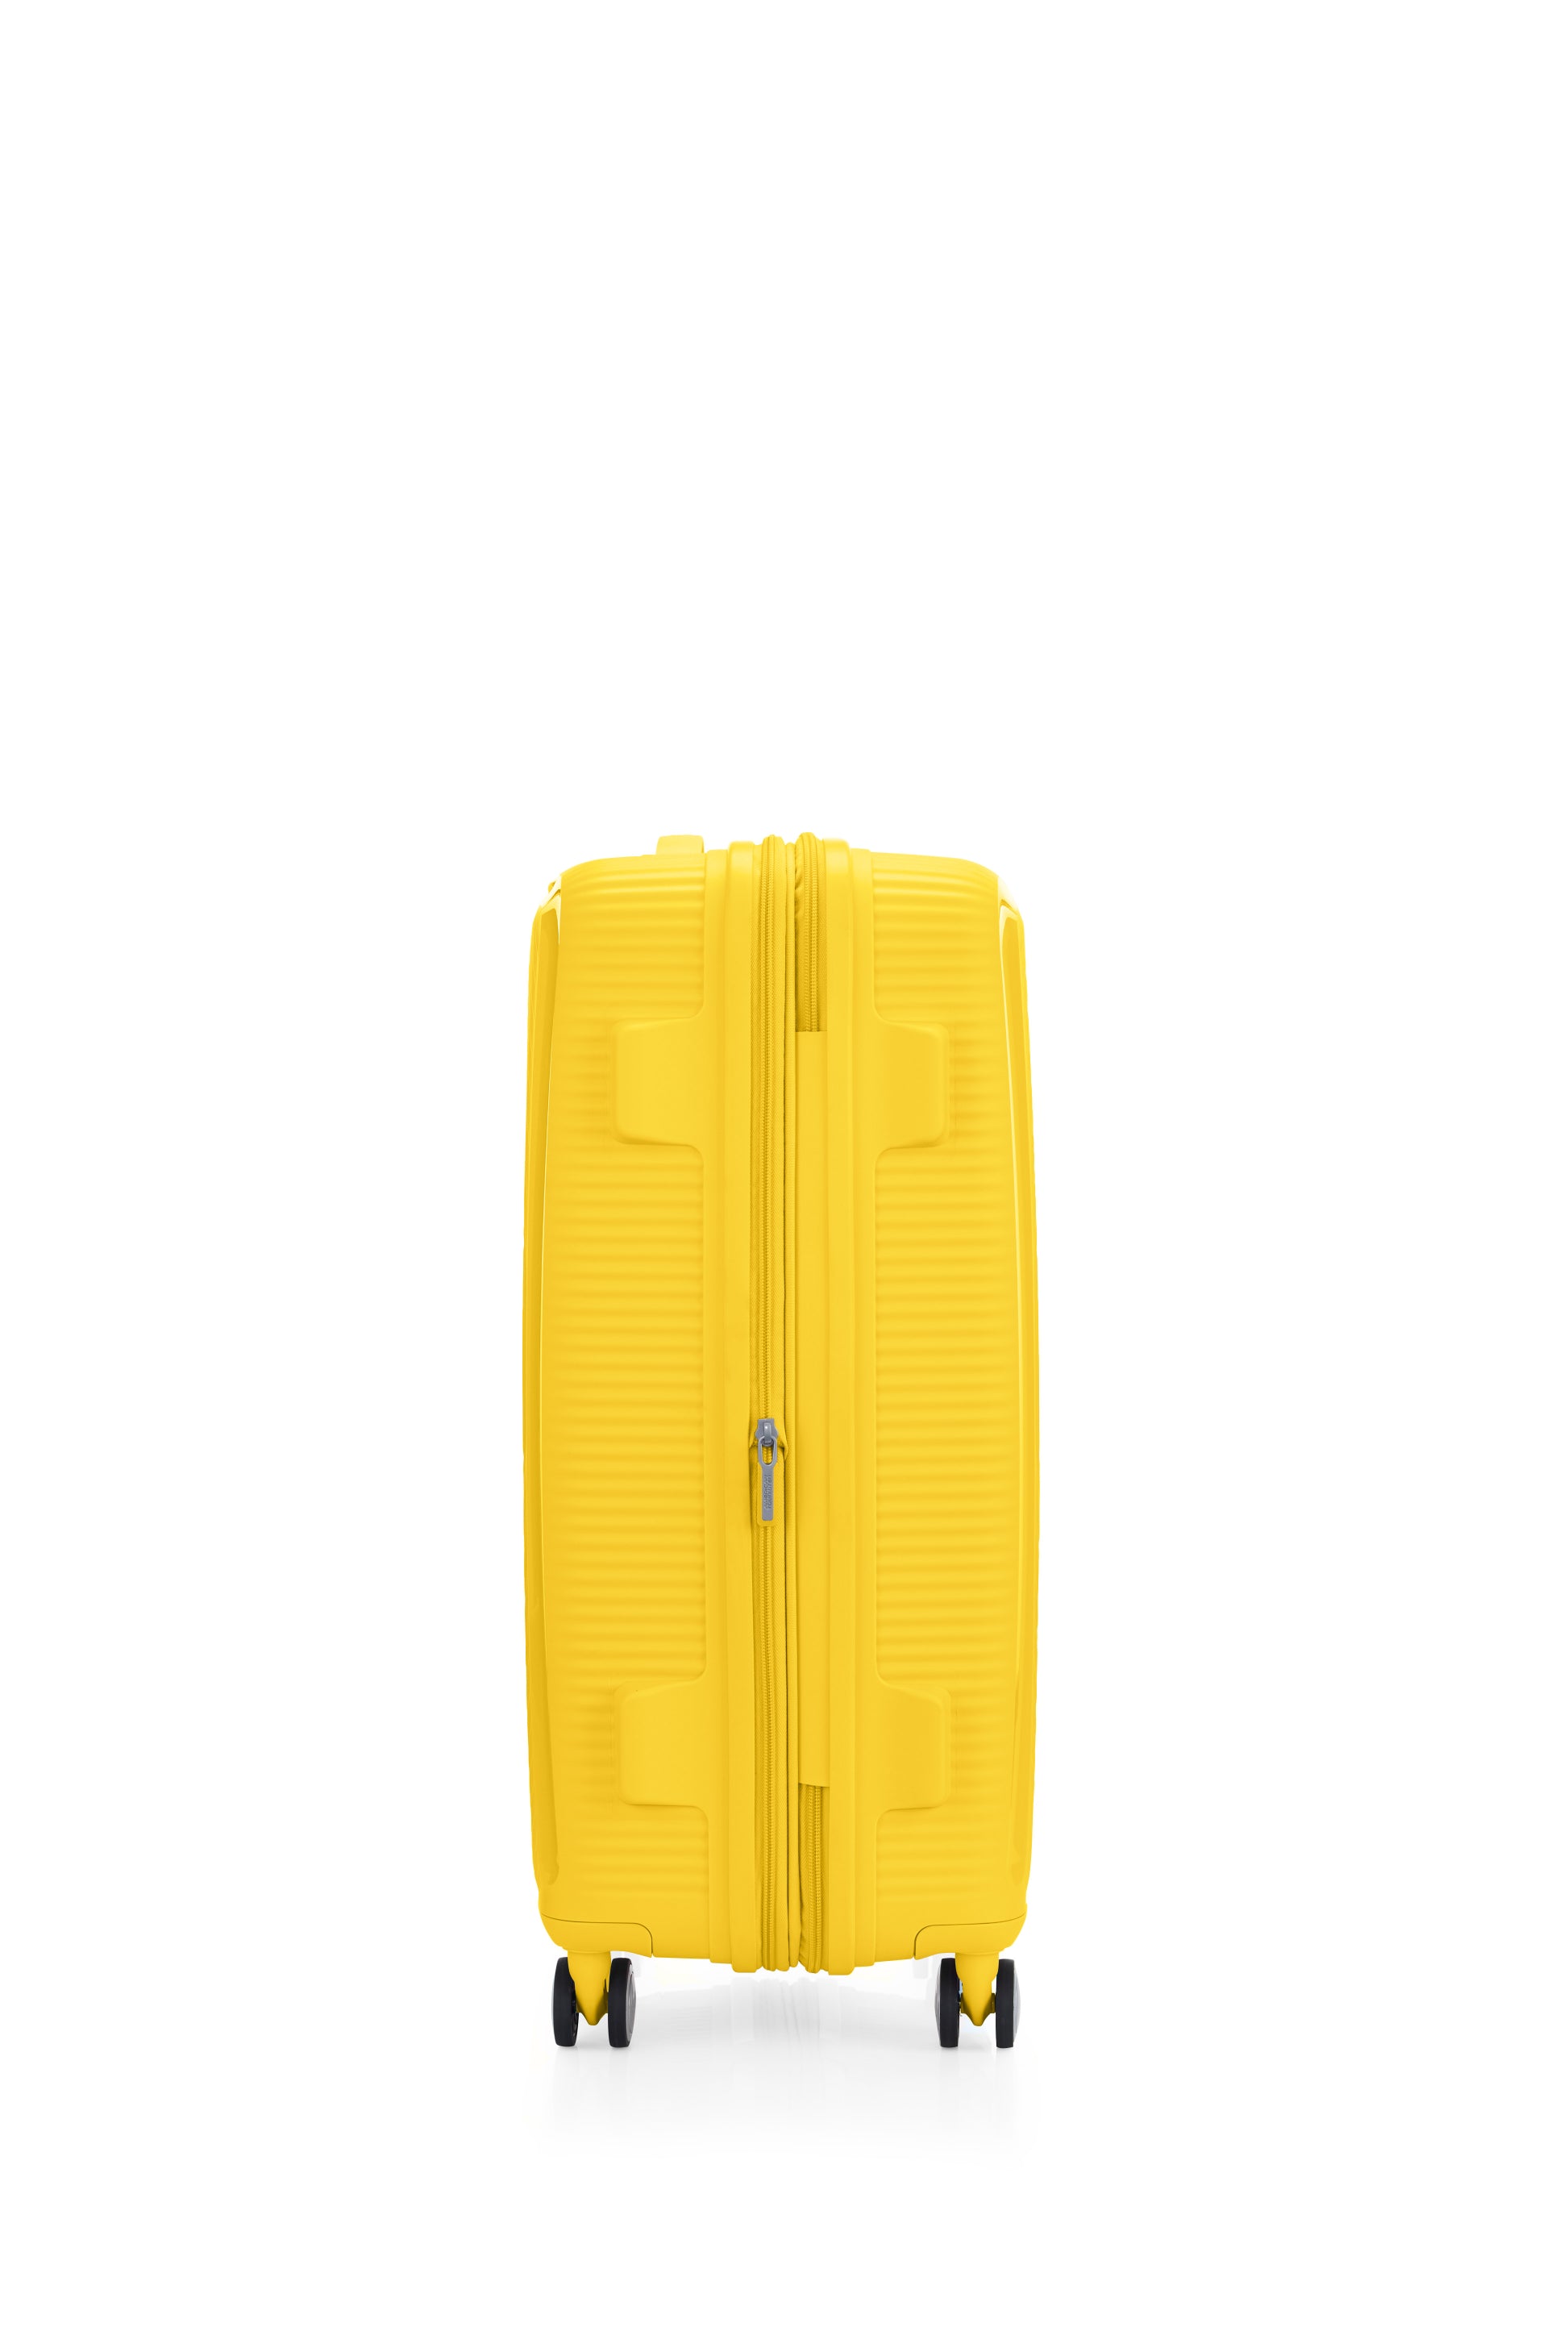 American Tourister - Curio 2.0 69cm Medium Suitcase - Golden Yellow-3